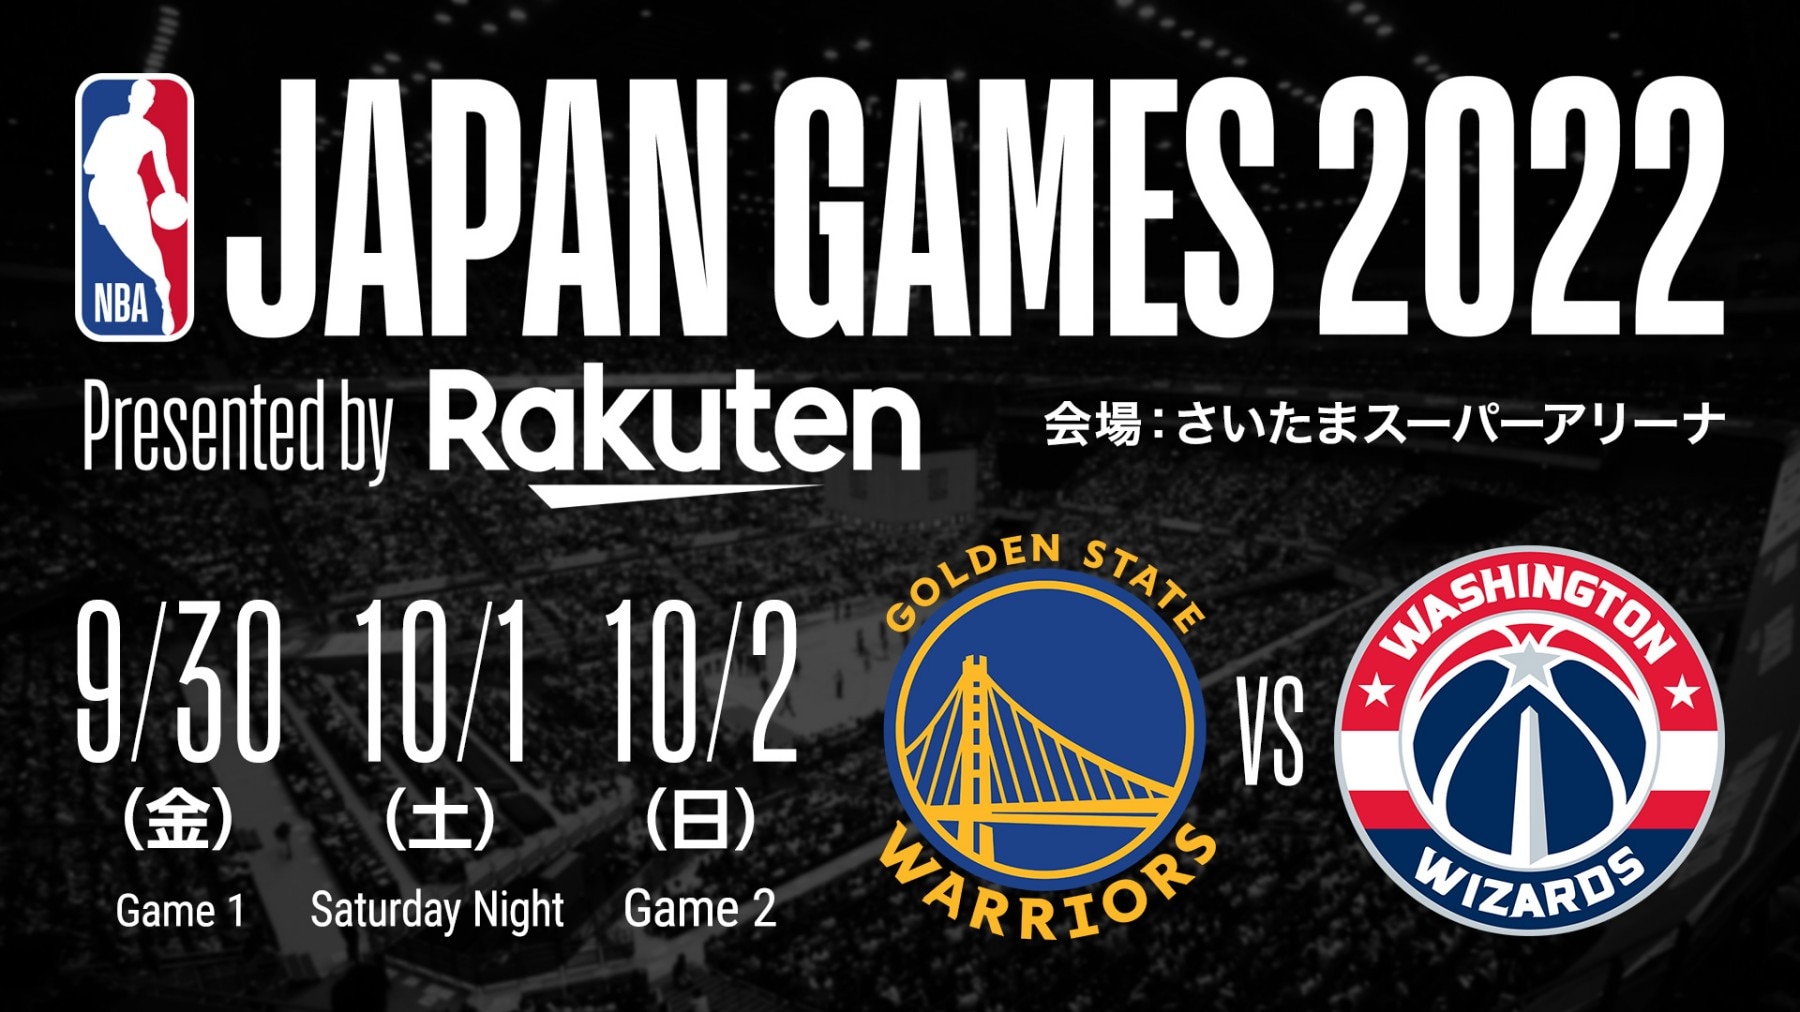 【お知らせ】「NBA Japan Games 2022 Presented by Rakuten」のチケット販売を開始